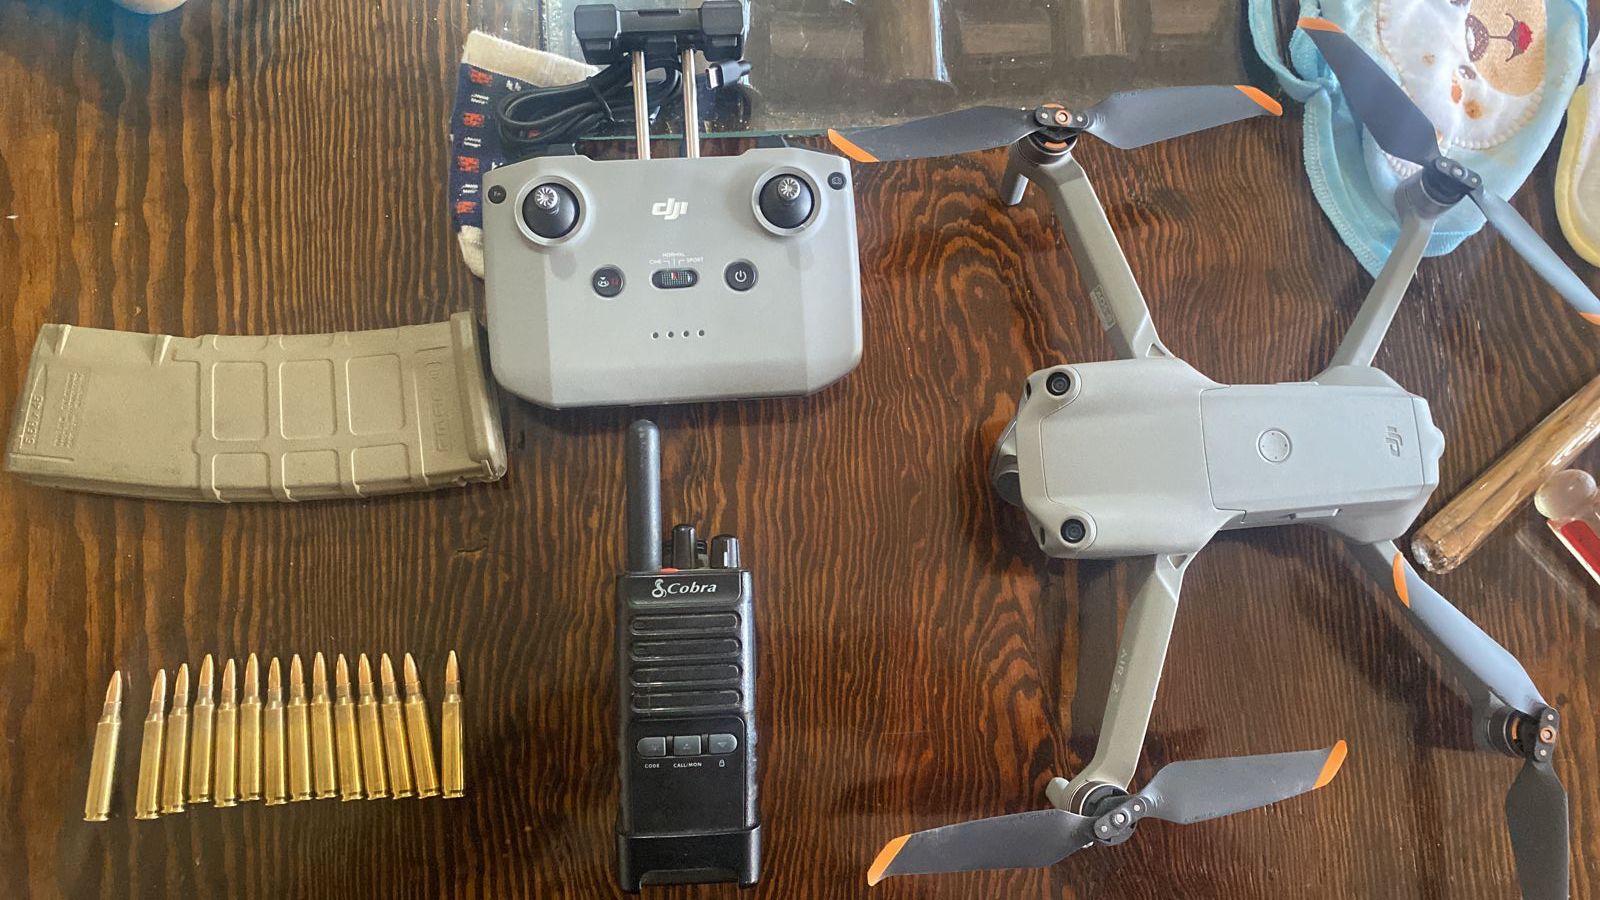 También fue hallado un vehículo no tripulado, es decir un dron 
(Foto: Fiscalía Edomex)